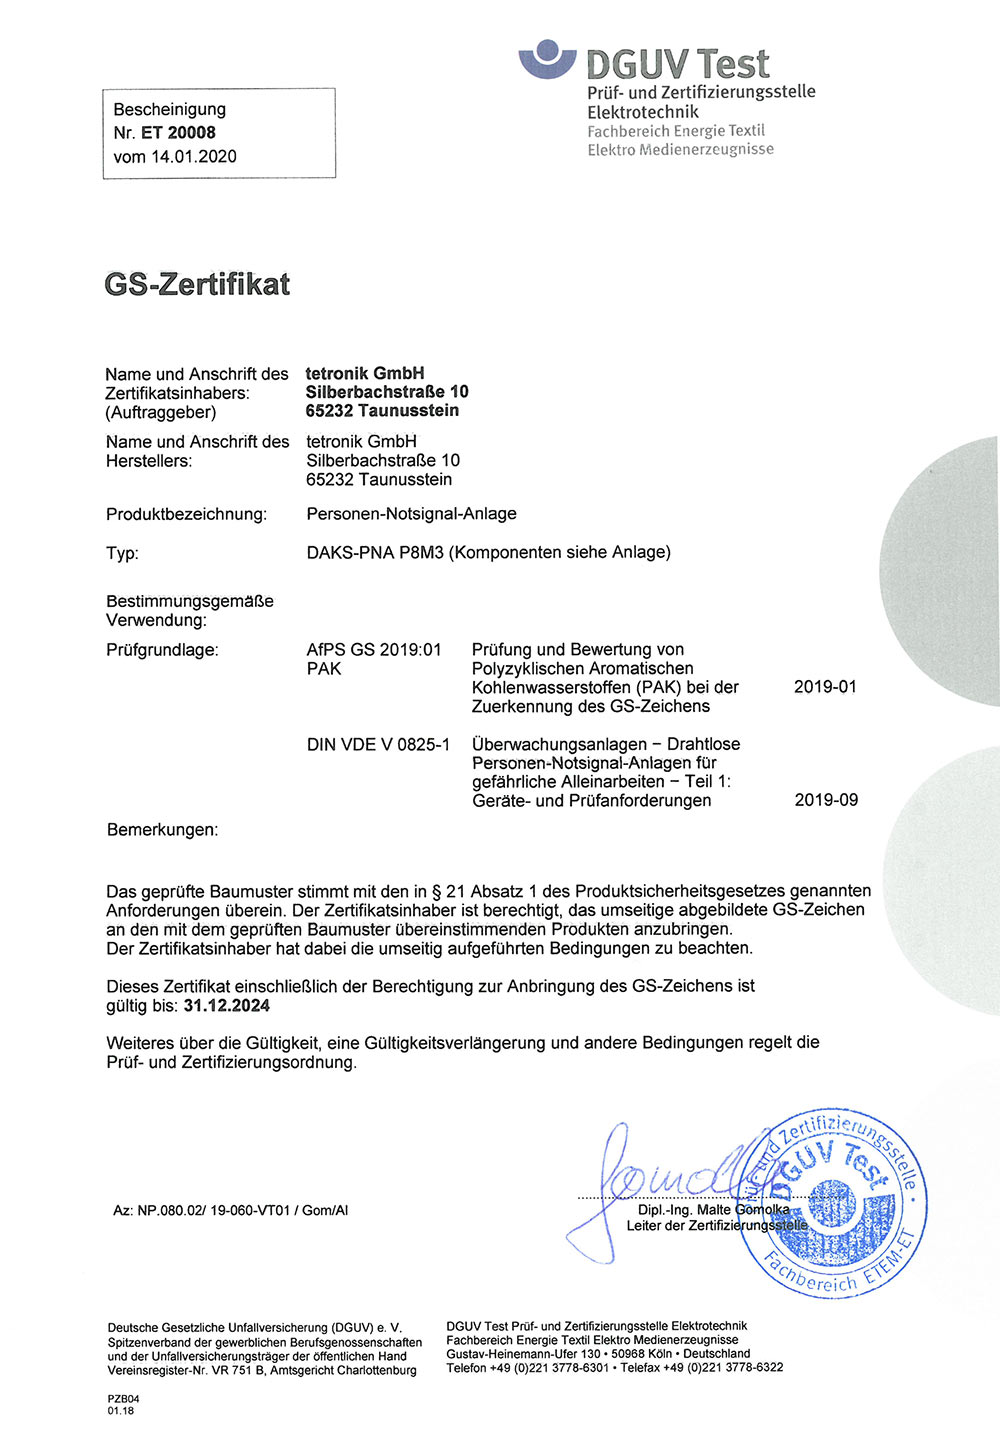 DGUV certificate for DAKS-PNA P8SL